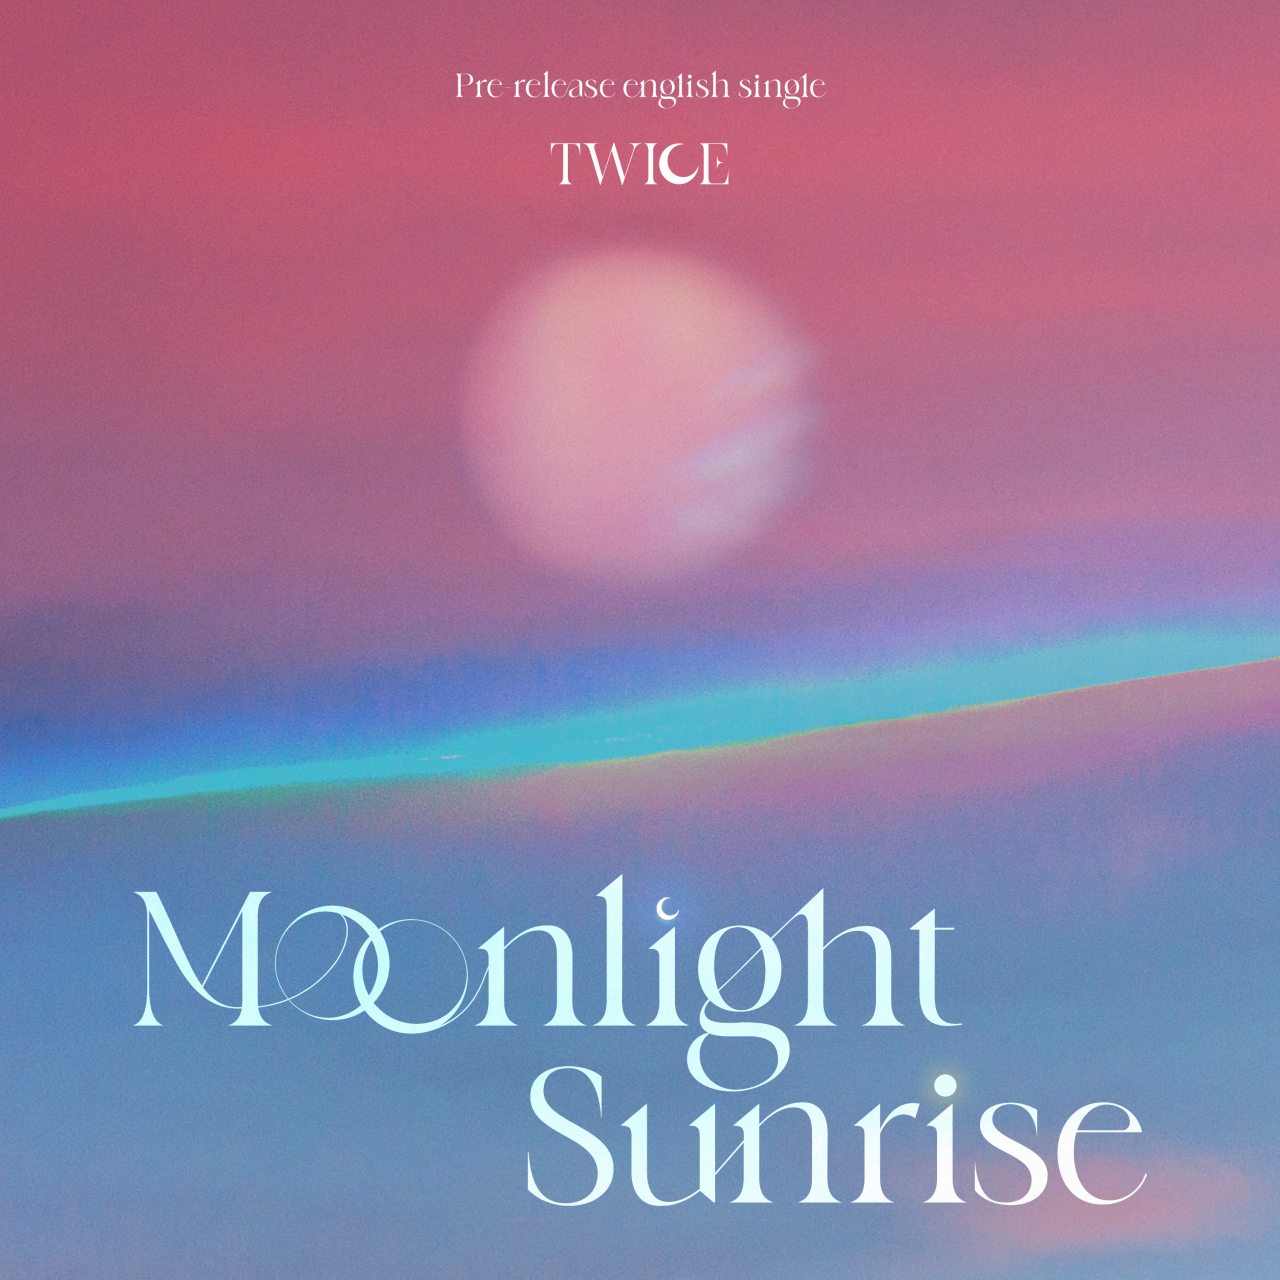 새 영어 싱글 “Moonlight Sunrise”를 두 번 발표했습니다.